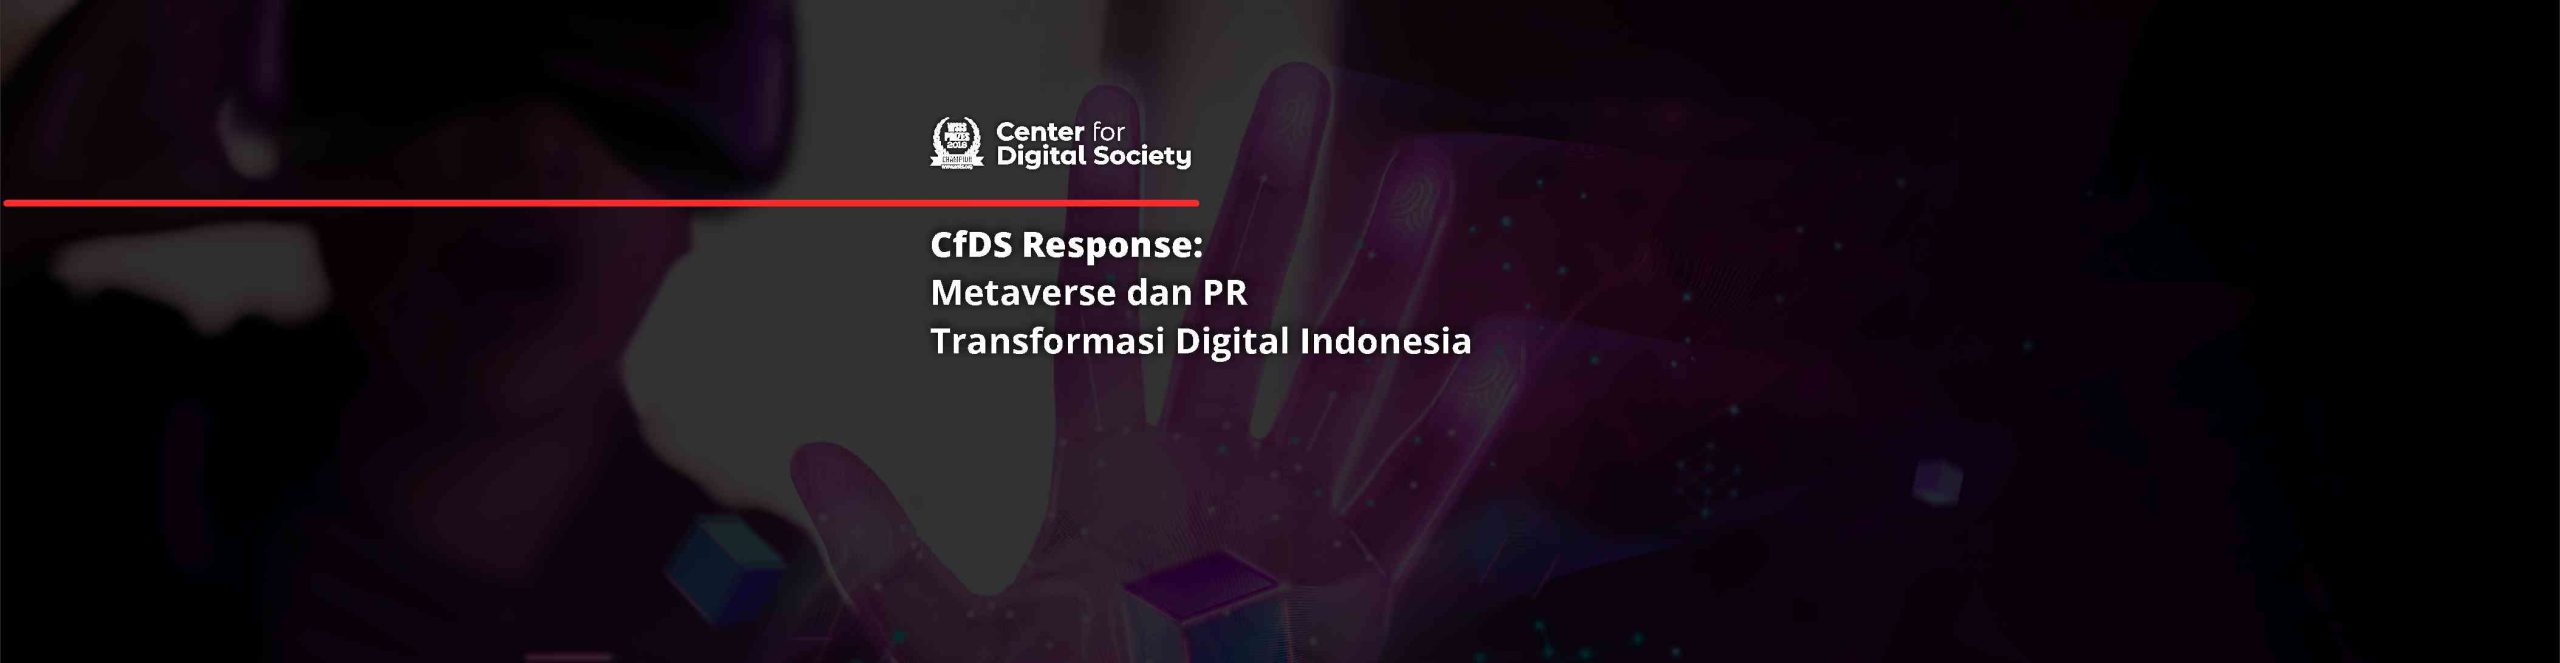 #CfDSResponse – Metaverse dan PR Transformasi Digital Indonesia